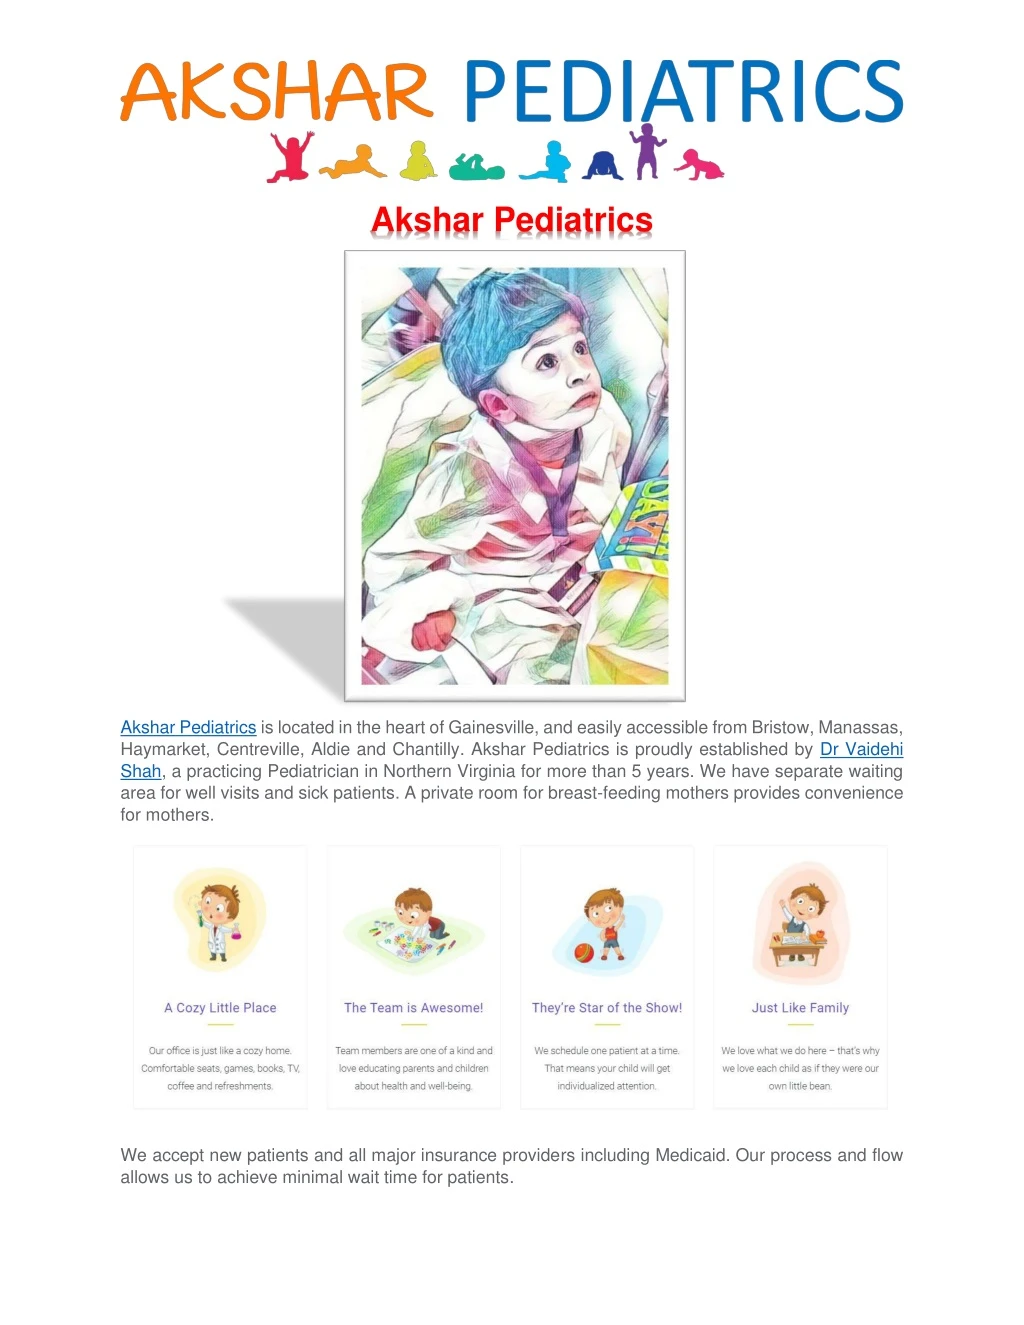 akshar pediatrics